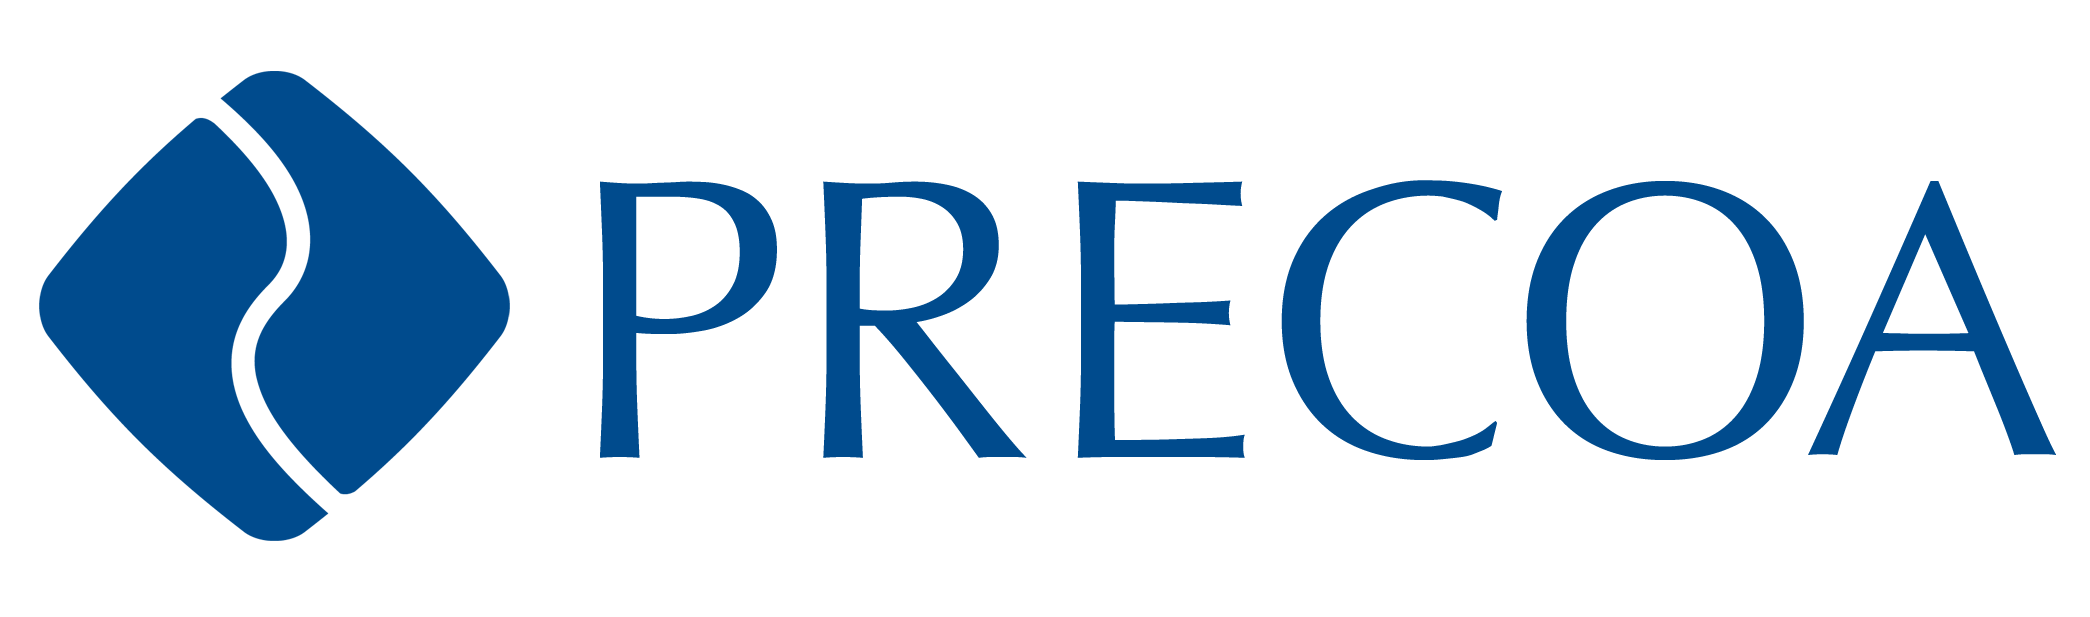 Precoa Company Logo